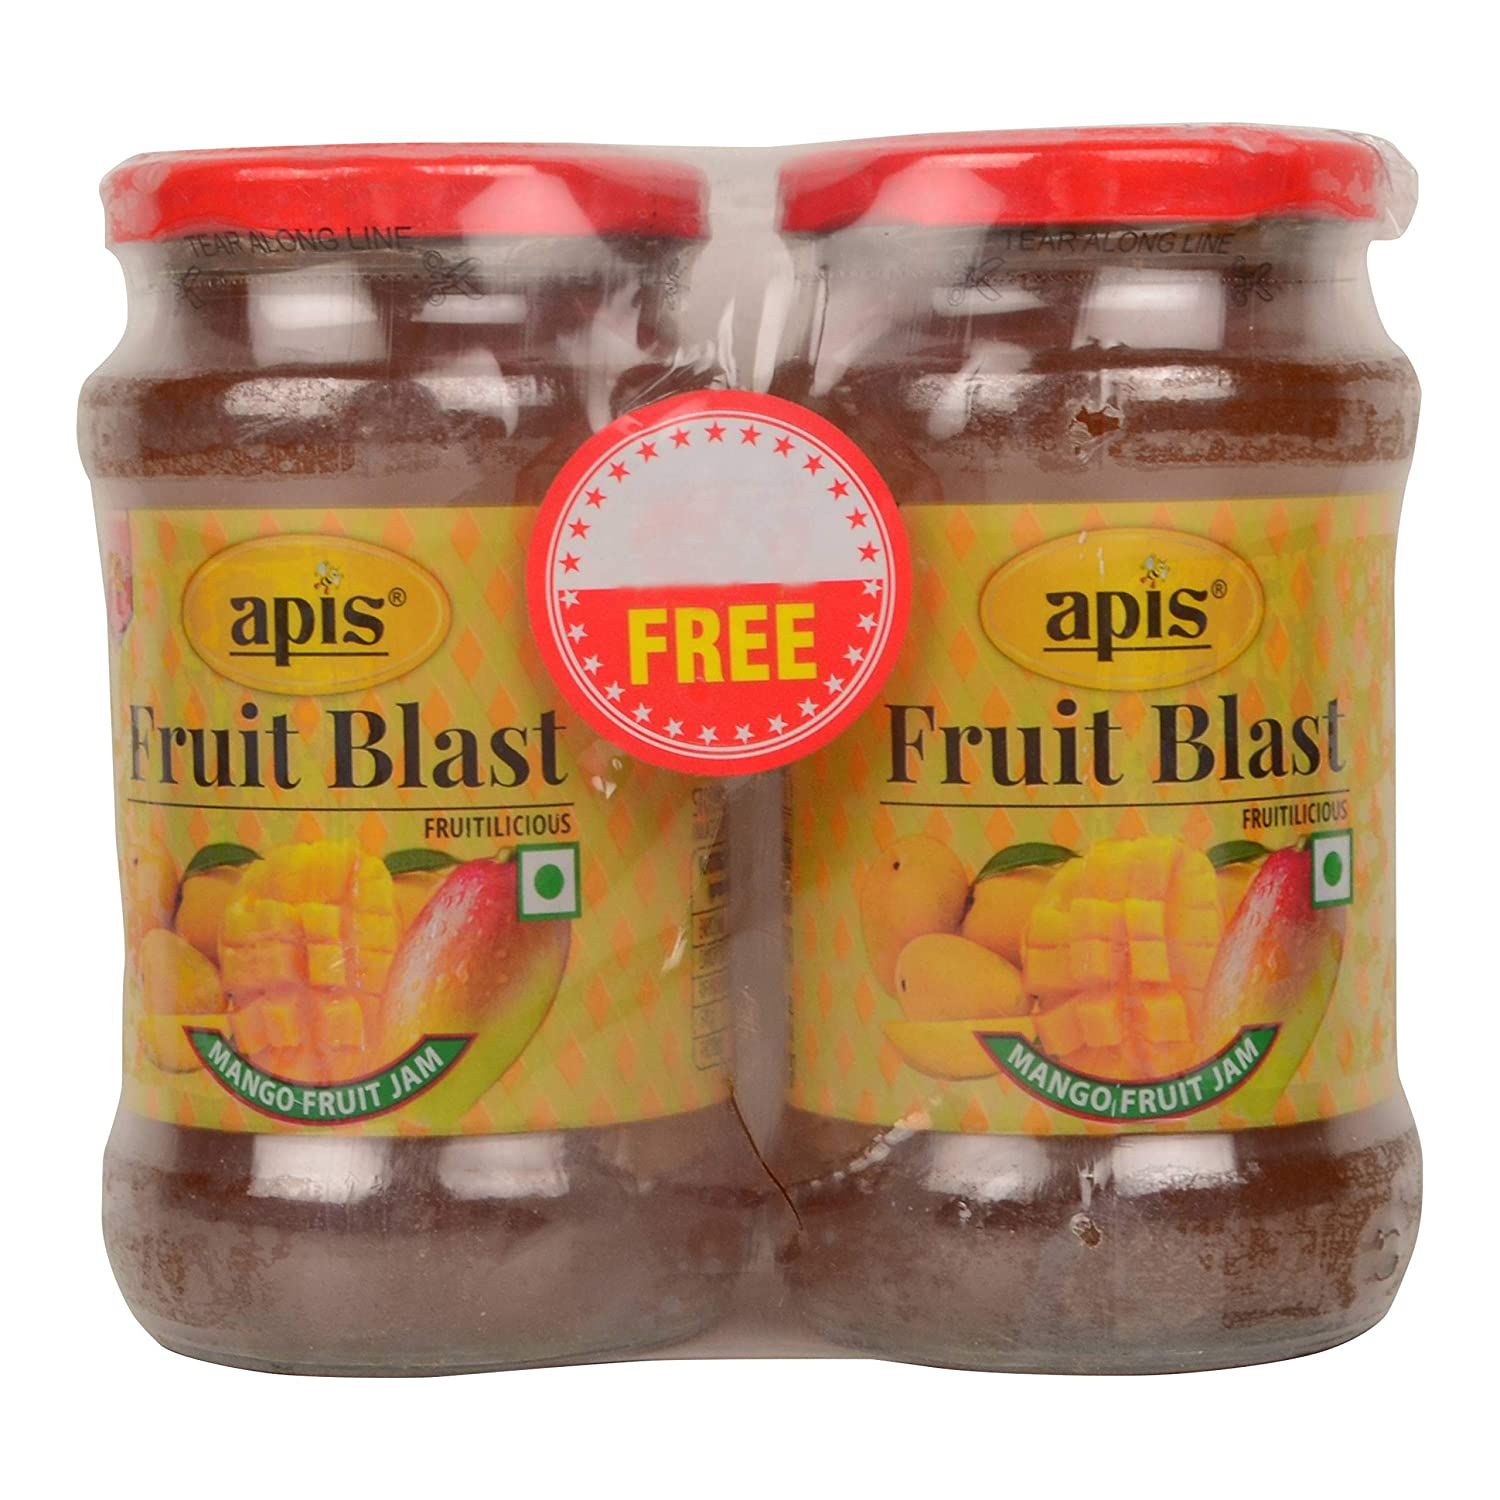 Apis Fruit Blast - Mango Fruit Jam Image